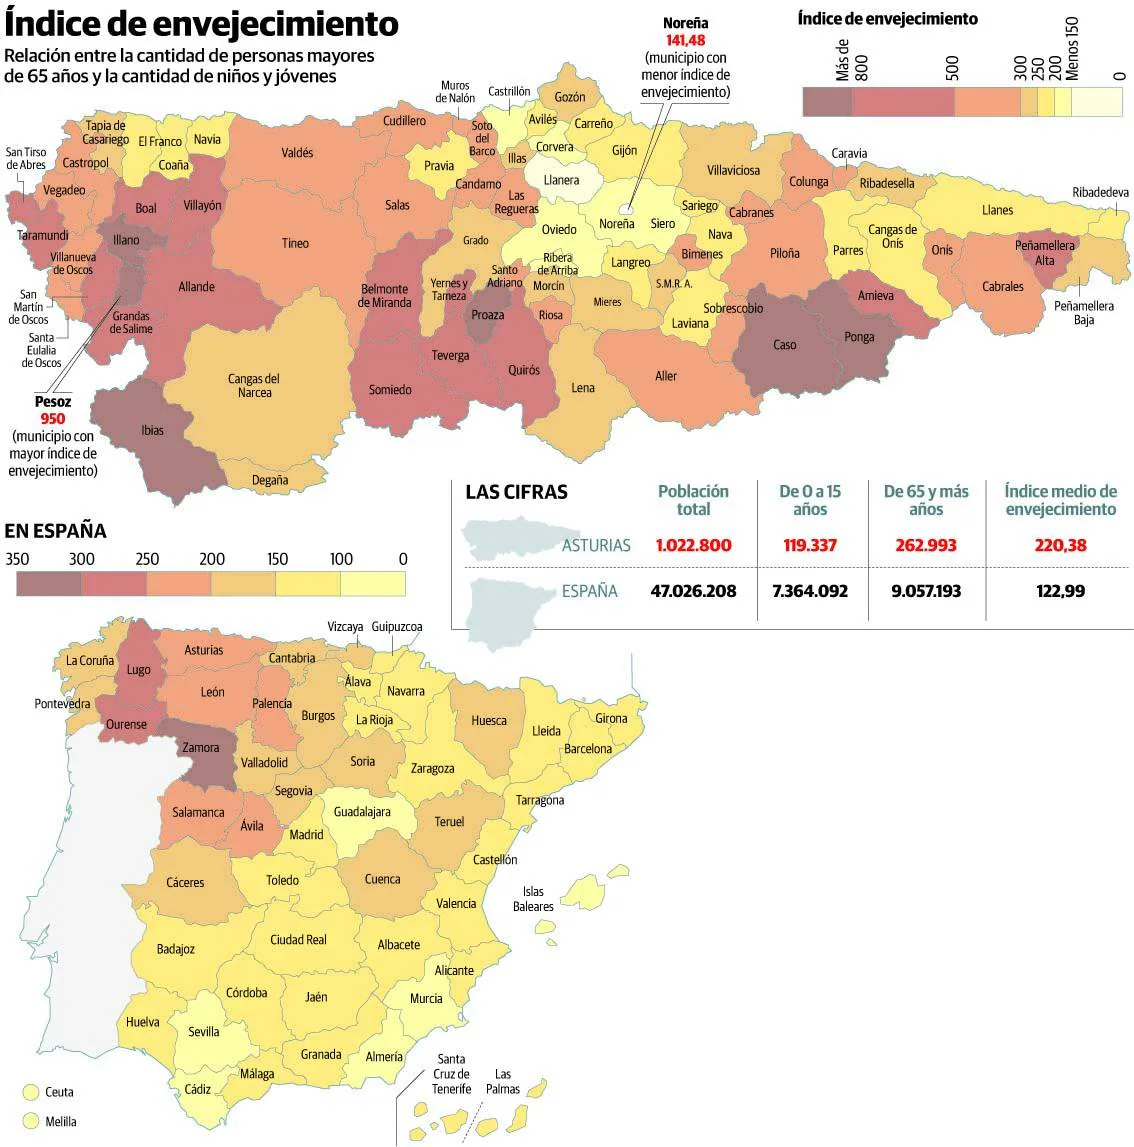 Todos los municipios de Asturias superan la tasa media de envejecimiento de España